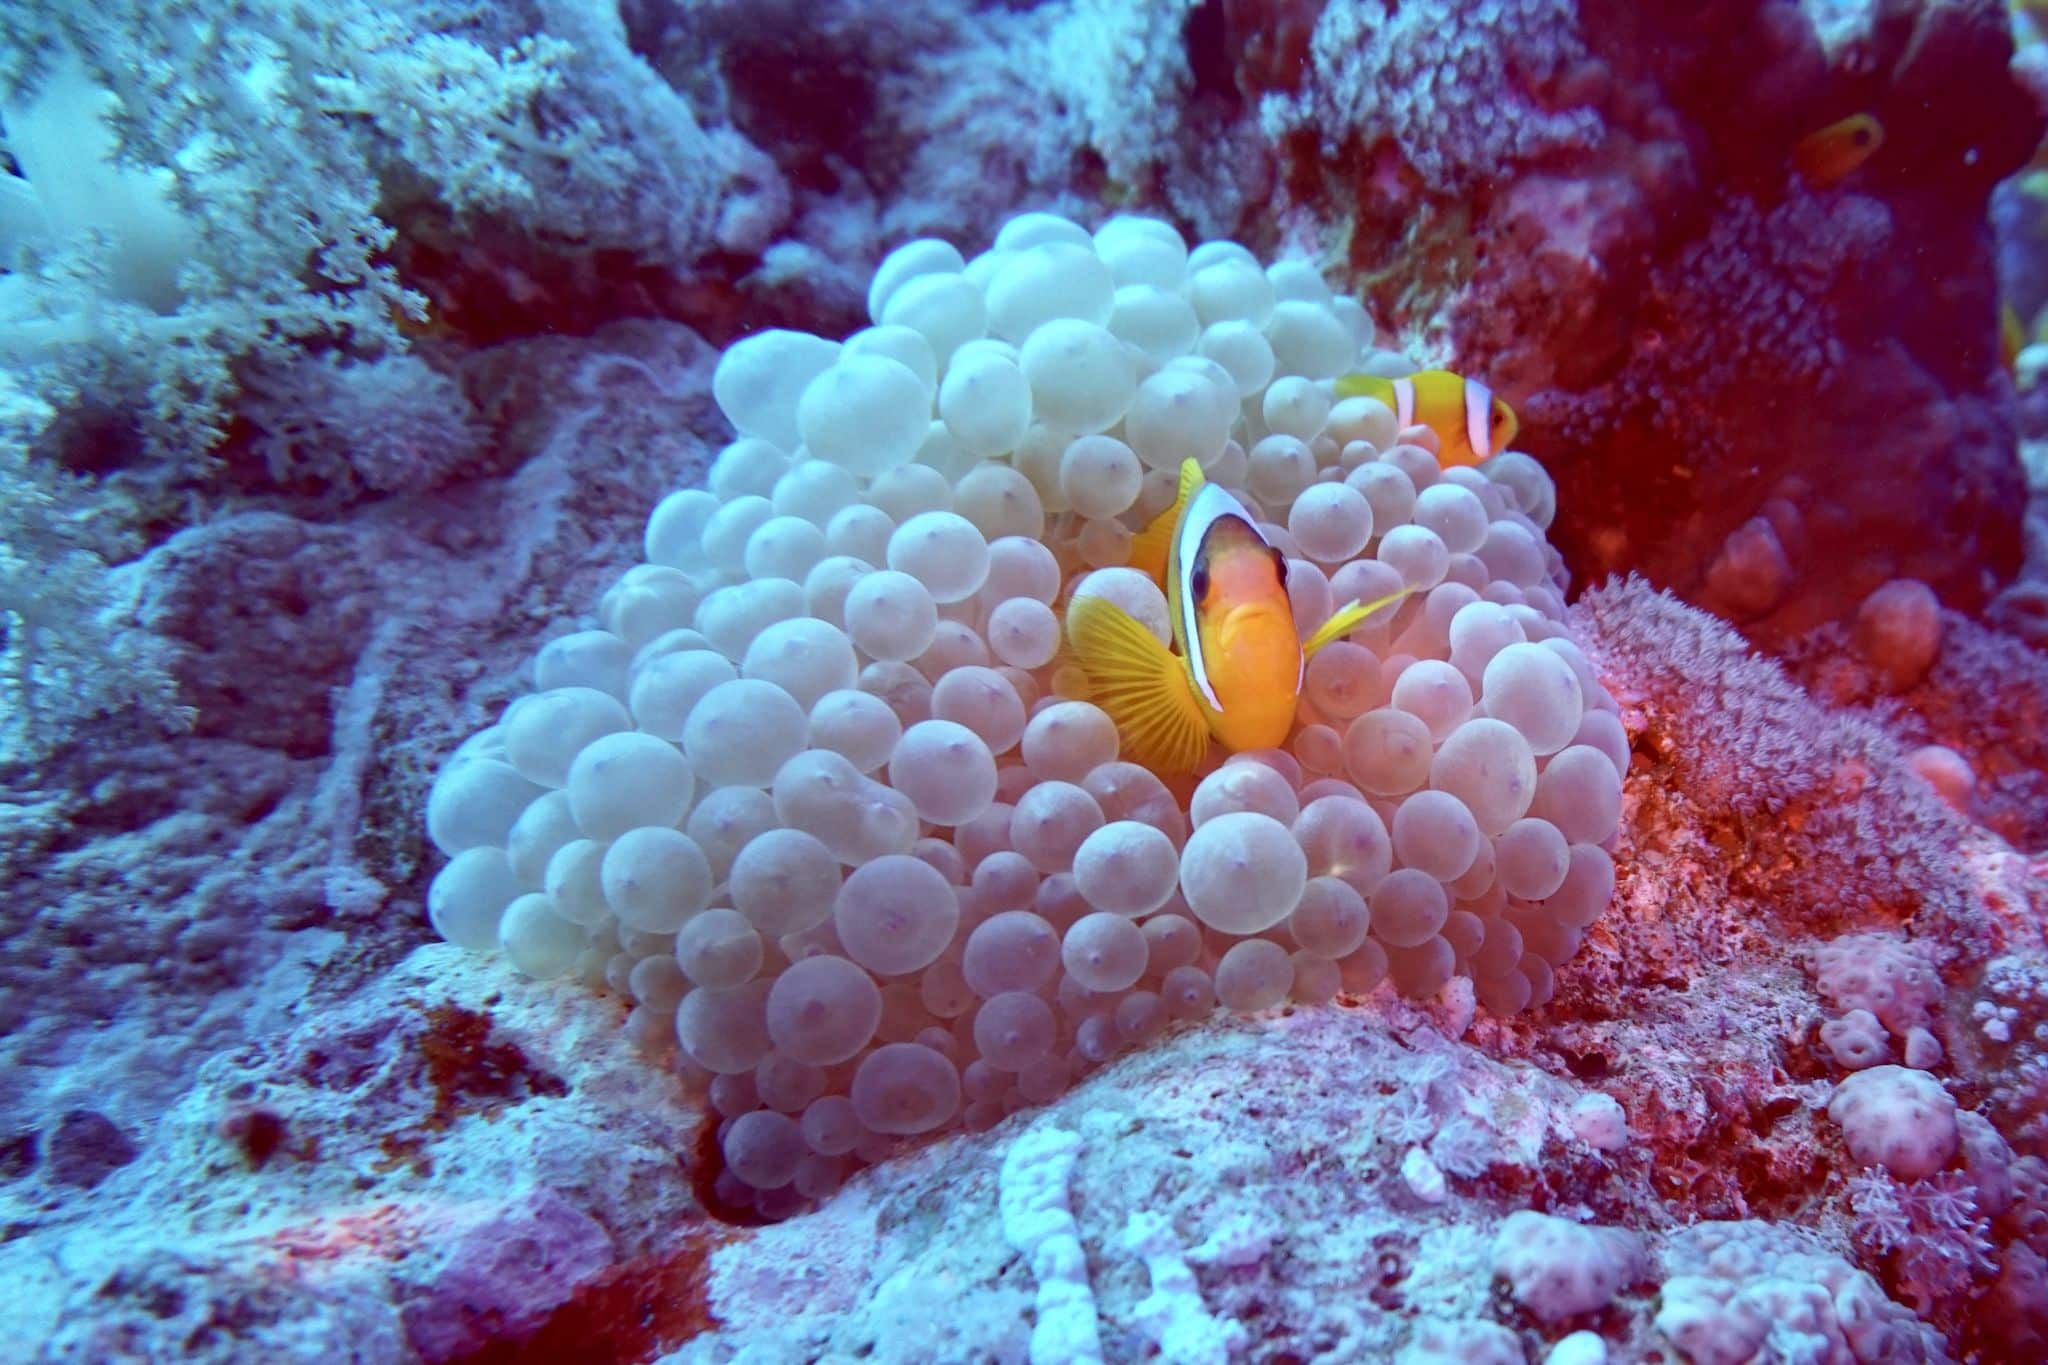 Reisebericht Safaga Tauchen in Safaga: Die Korallenriffe im Roten Meer sind absolut herrlich und intakt! Foto: Sascha Tegtmeyer